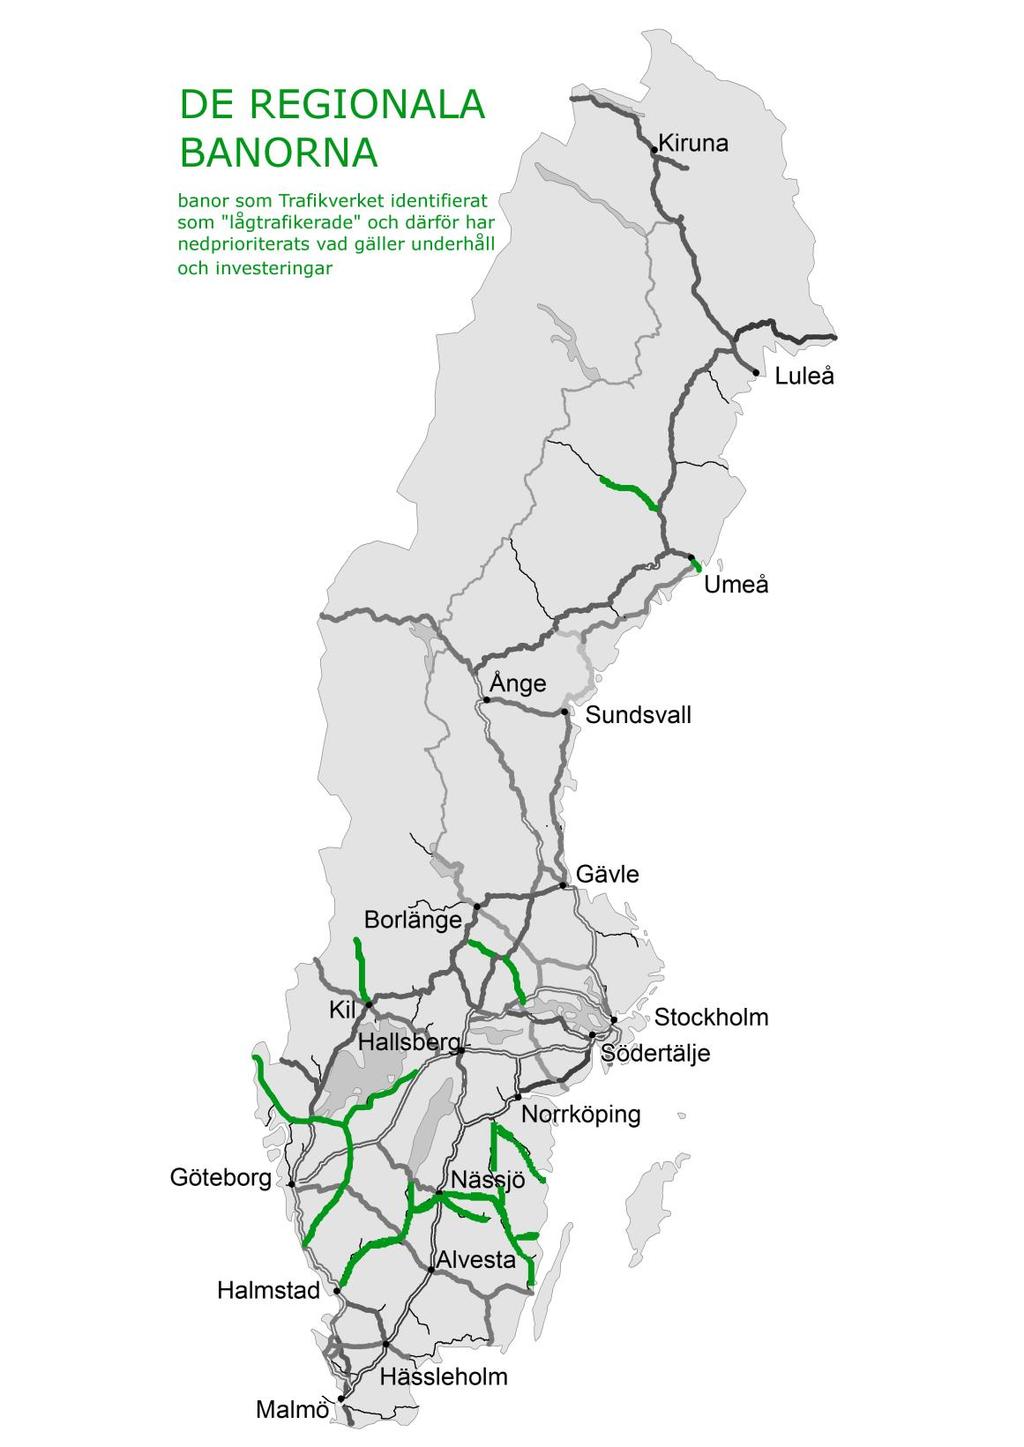 Följande banor med persontågstrafik är berörda 1 Stångådalsbanan: Linköping - Kinda- Vimmerby - Hultsfred - Högsby - Mönsterås - Kalmar 2 Tjustbanan: Linköping - Åtvidaberg Västervik 3 Nässjö -